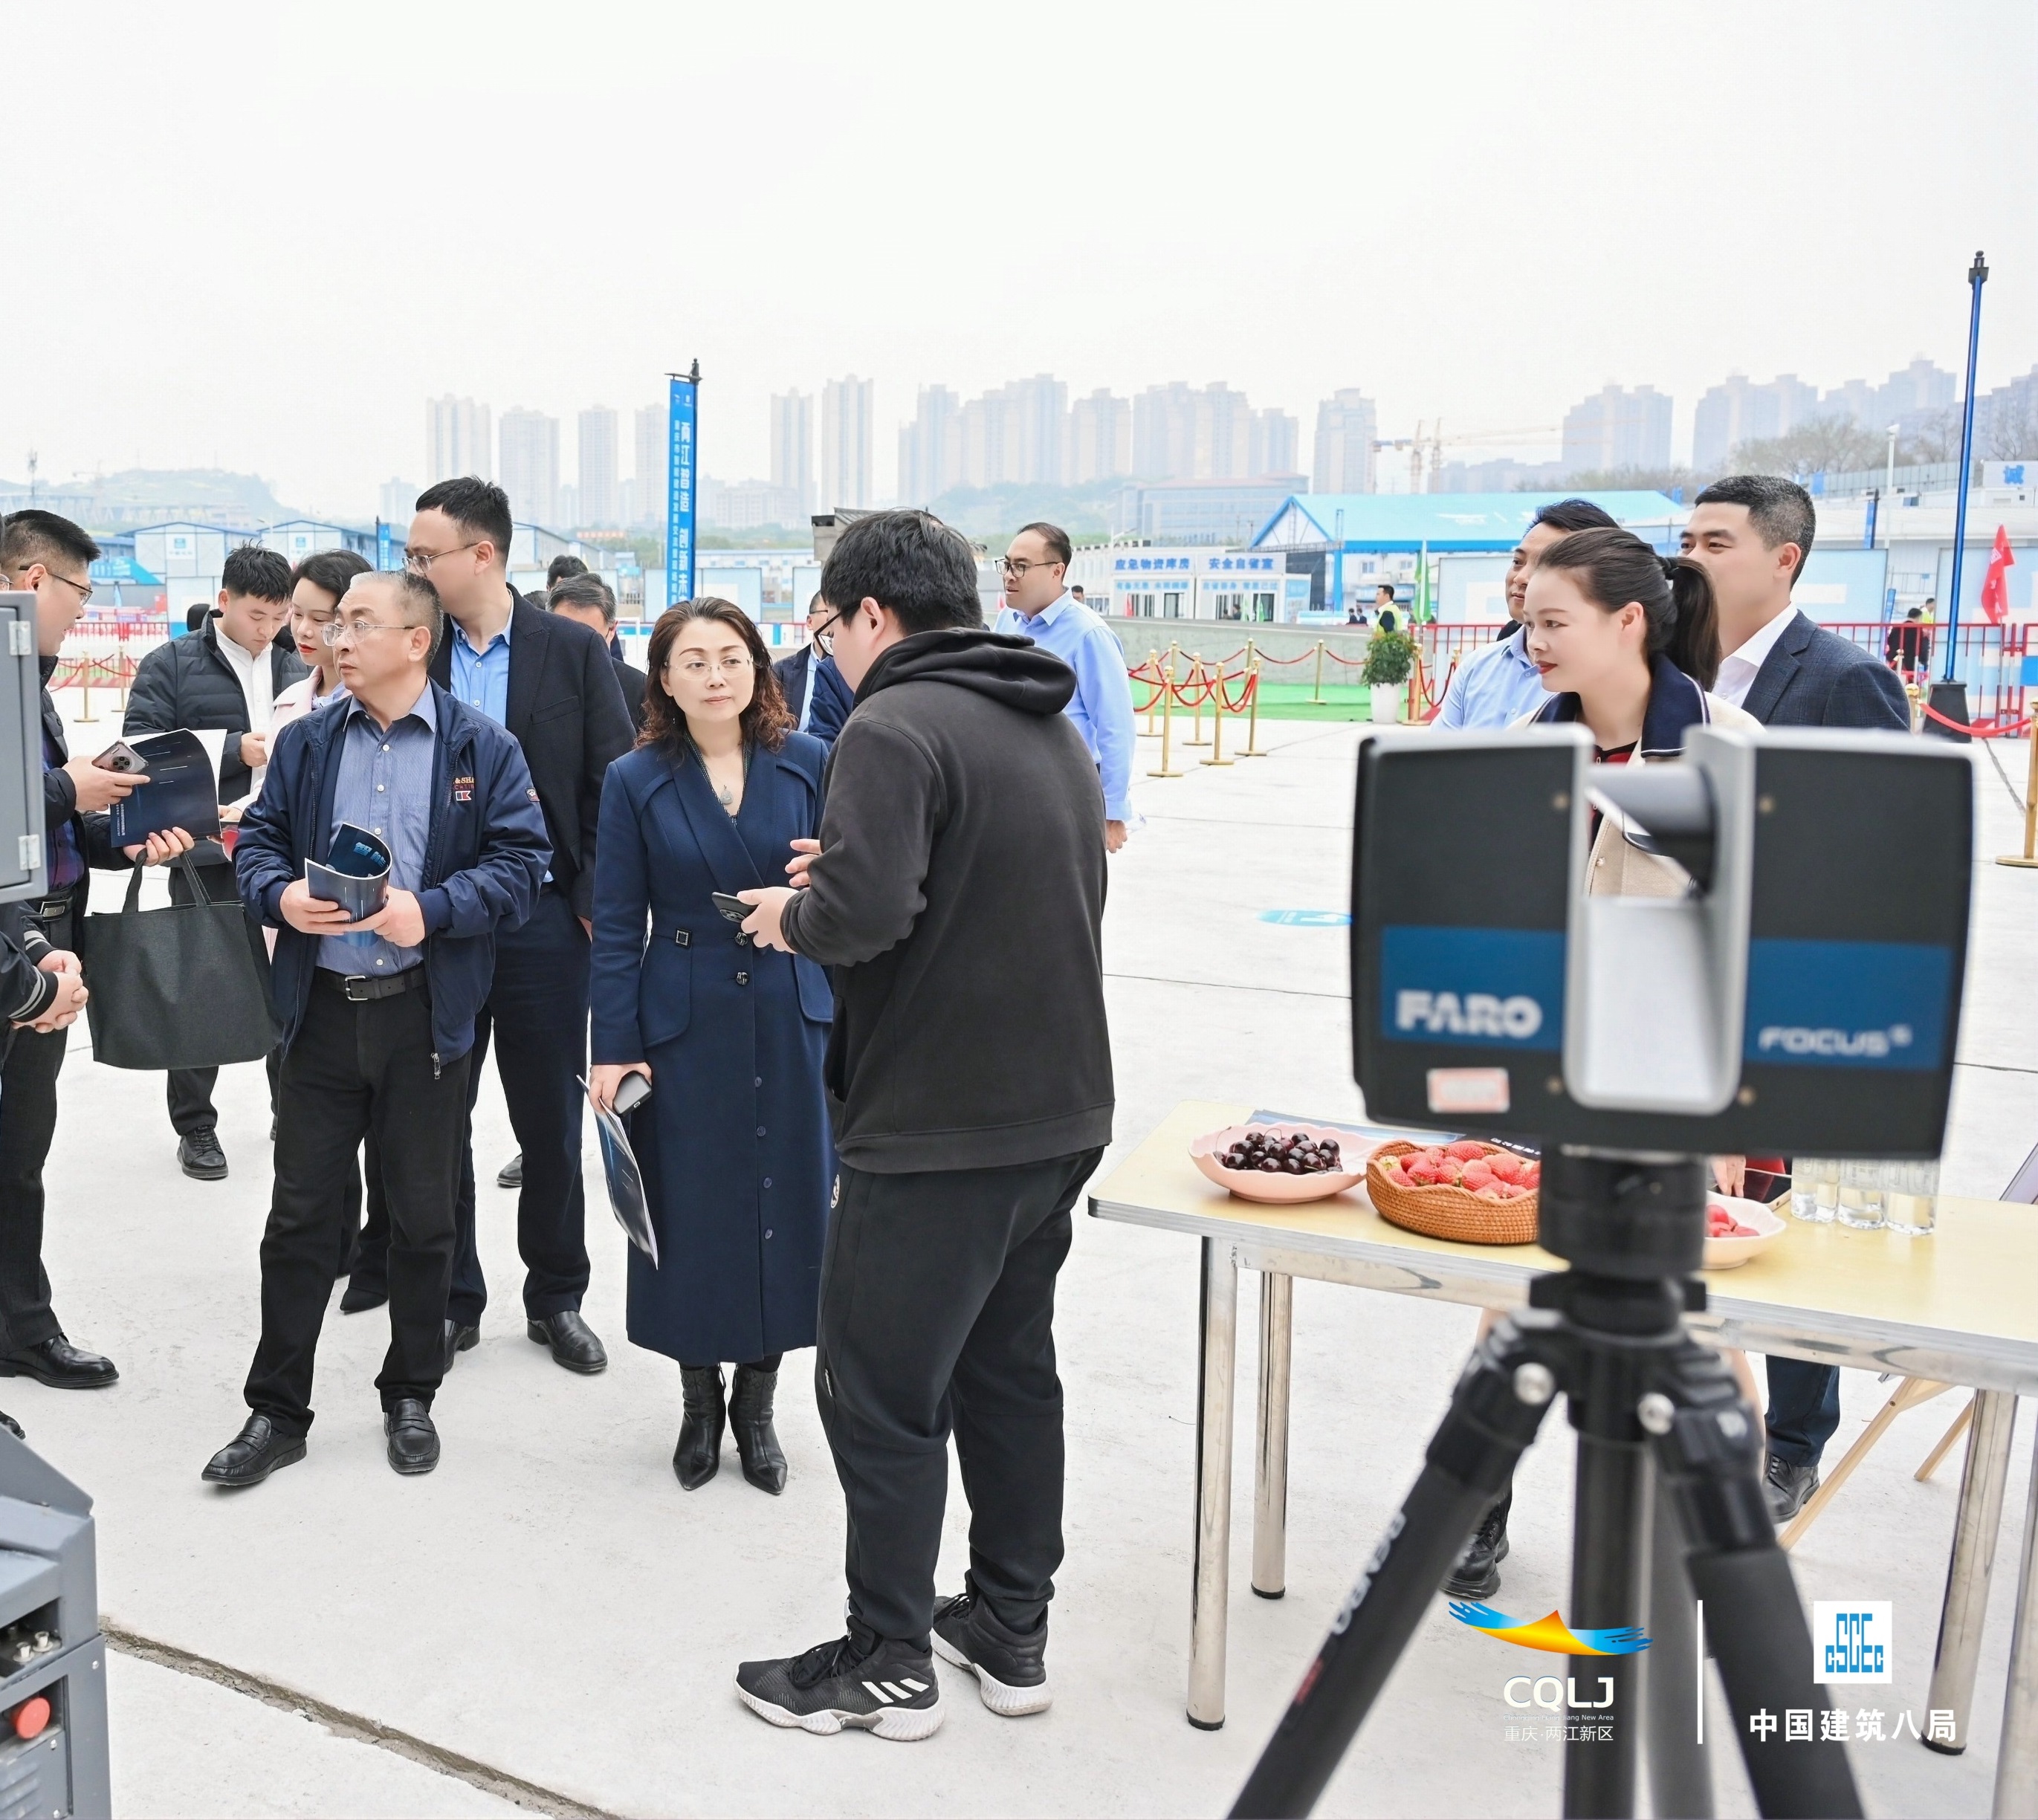 共建发展丨领慧参加重庆市智能建造发展交流暨现场观摩会